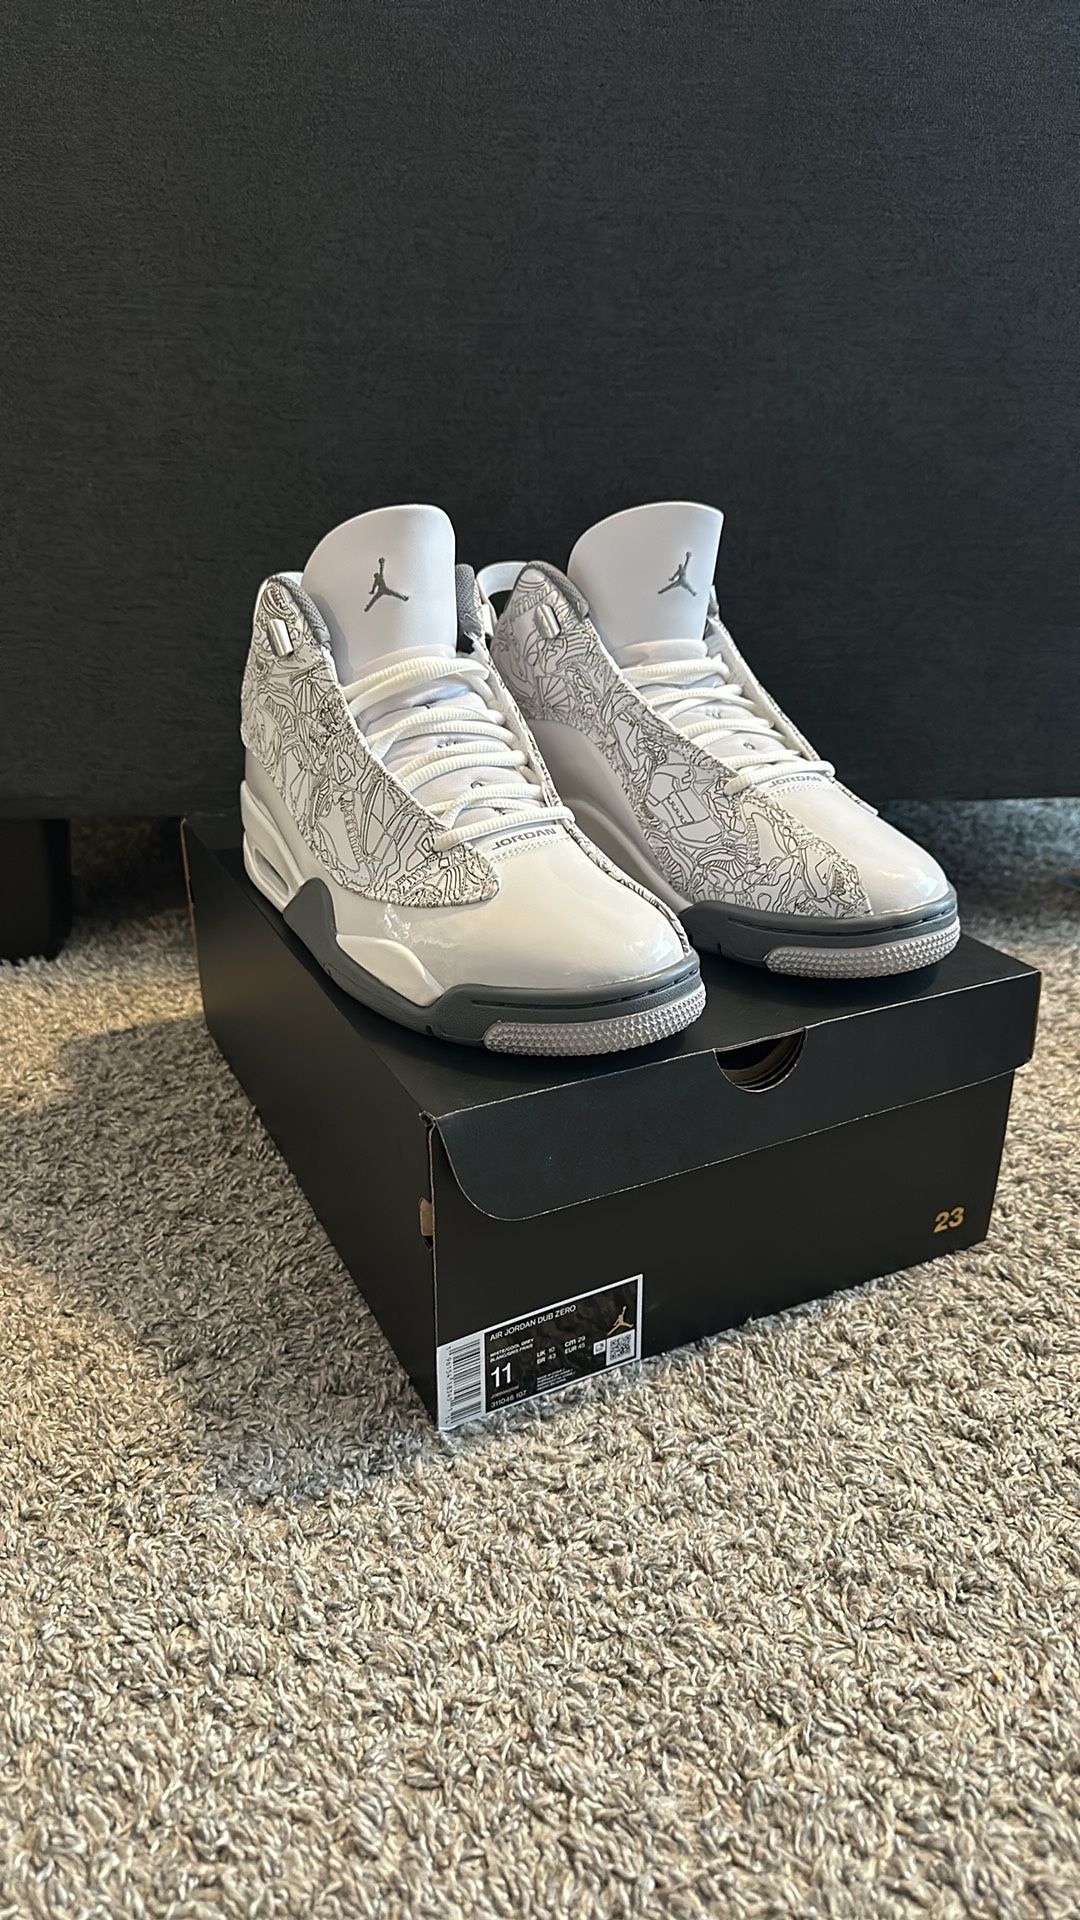 Air Jordan “ Dub Zero” White/gray Size 11